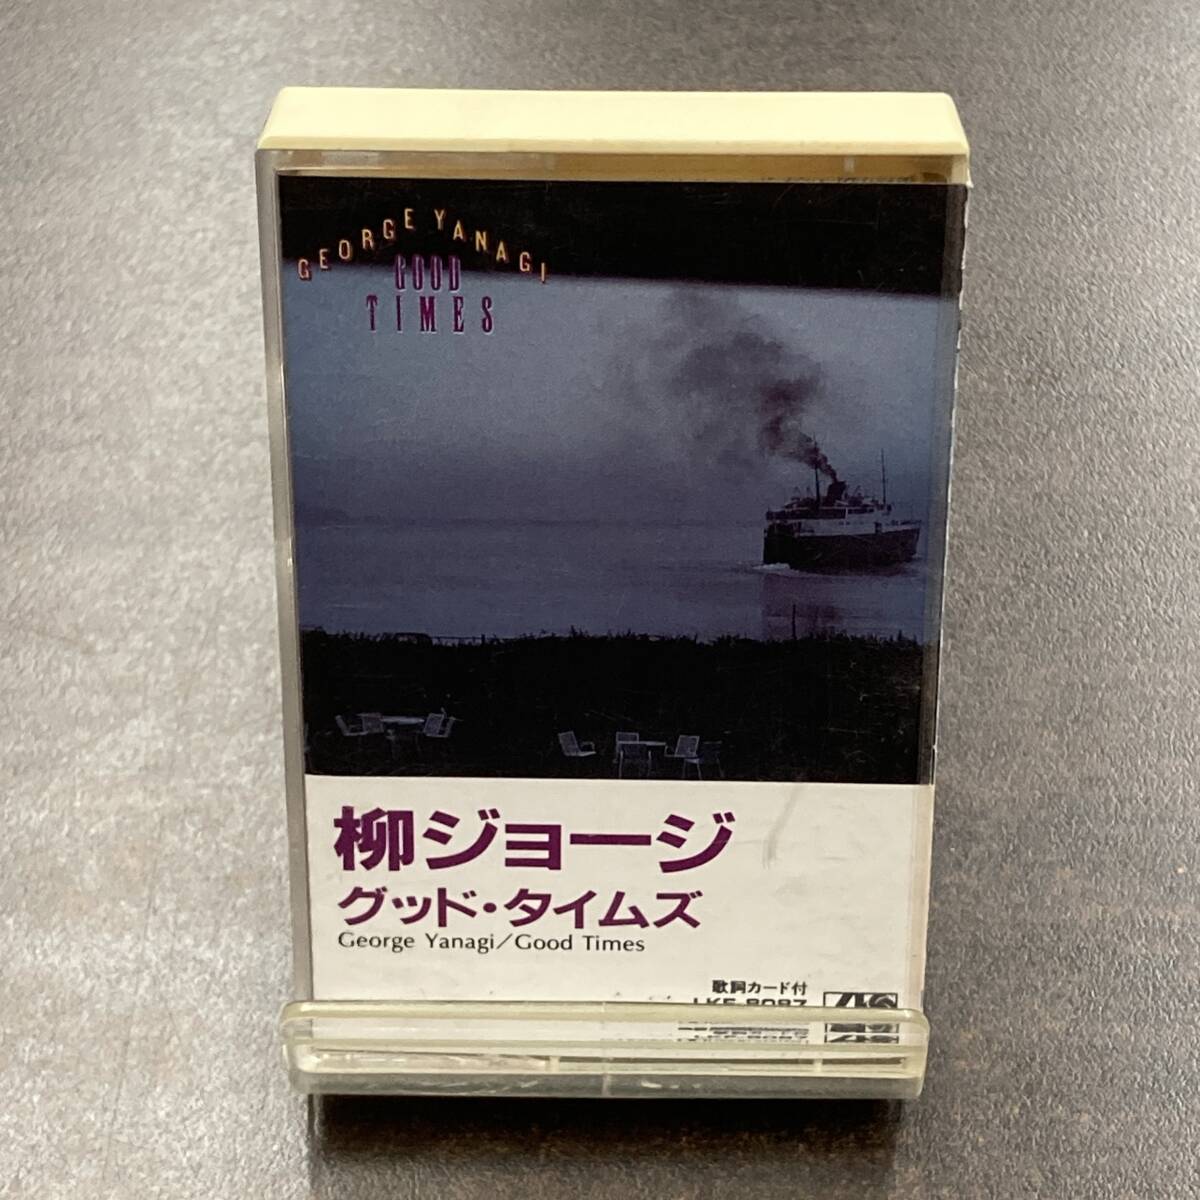 1184M 柳ジョージ グッド・タイムズ カセットテープ / George Yanagi Citypop Cassette Tapeの画像1